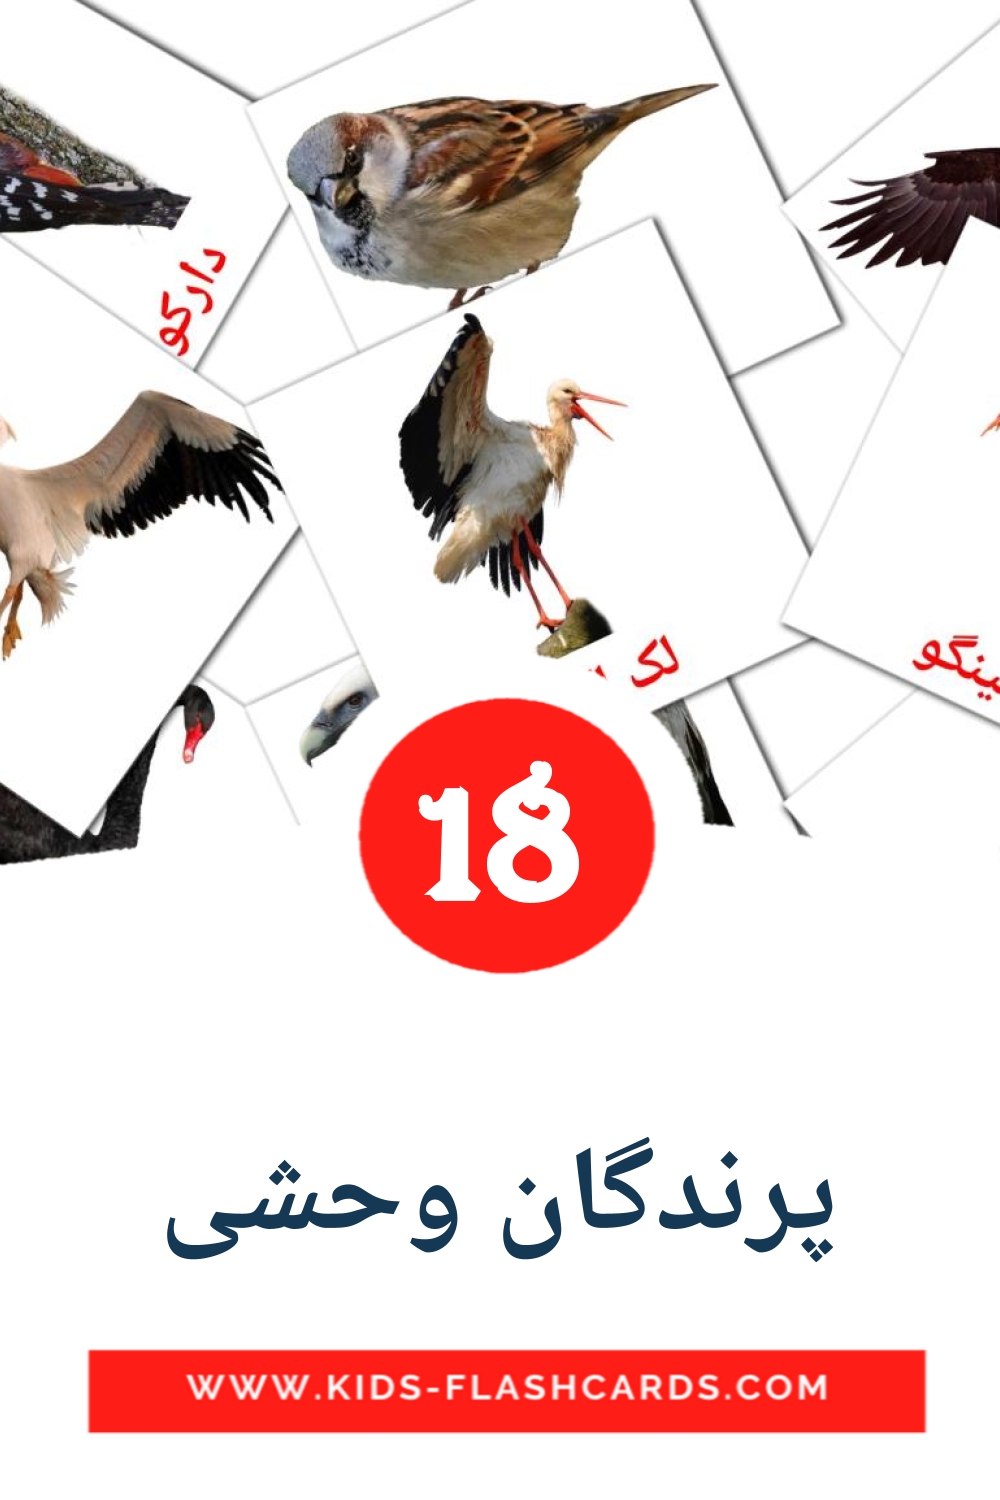 18 پرندگان وحشی Picture Cards for Kindergarden in persian